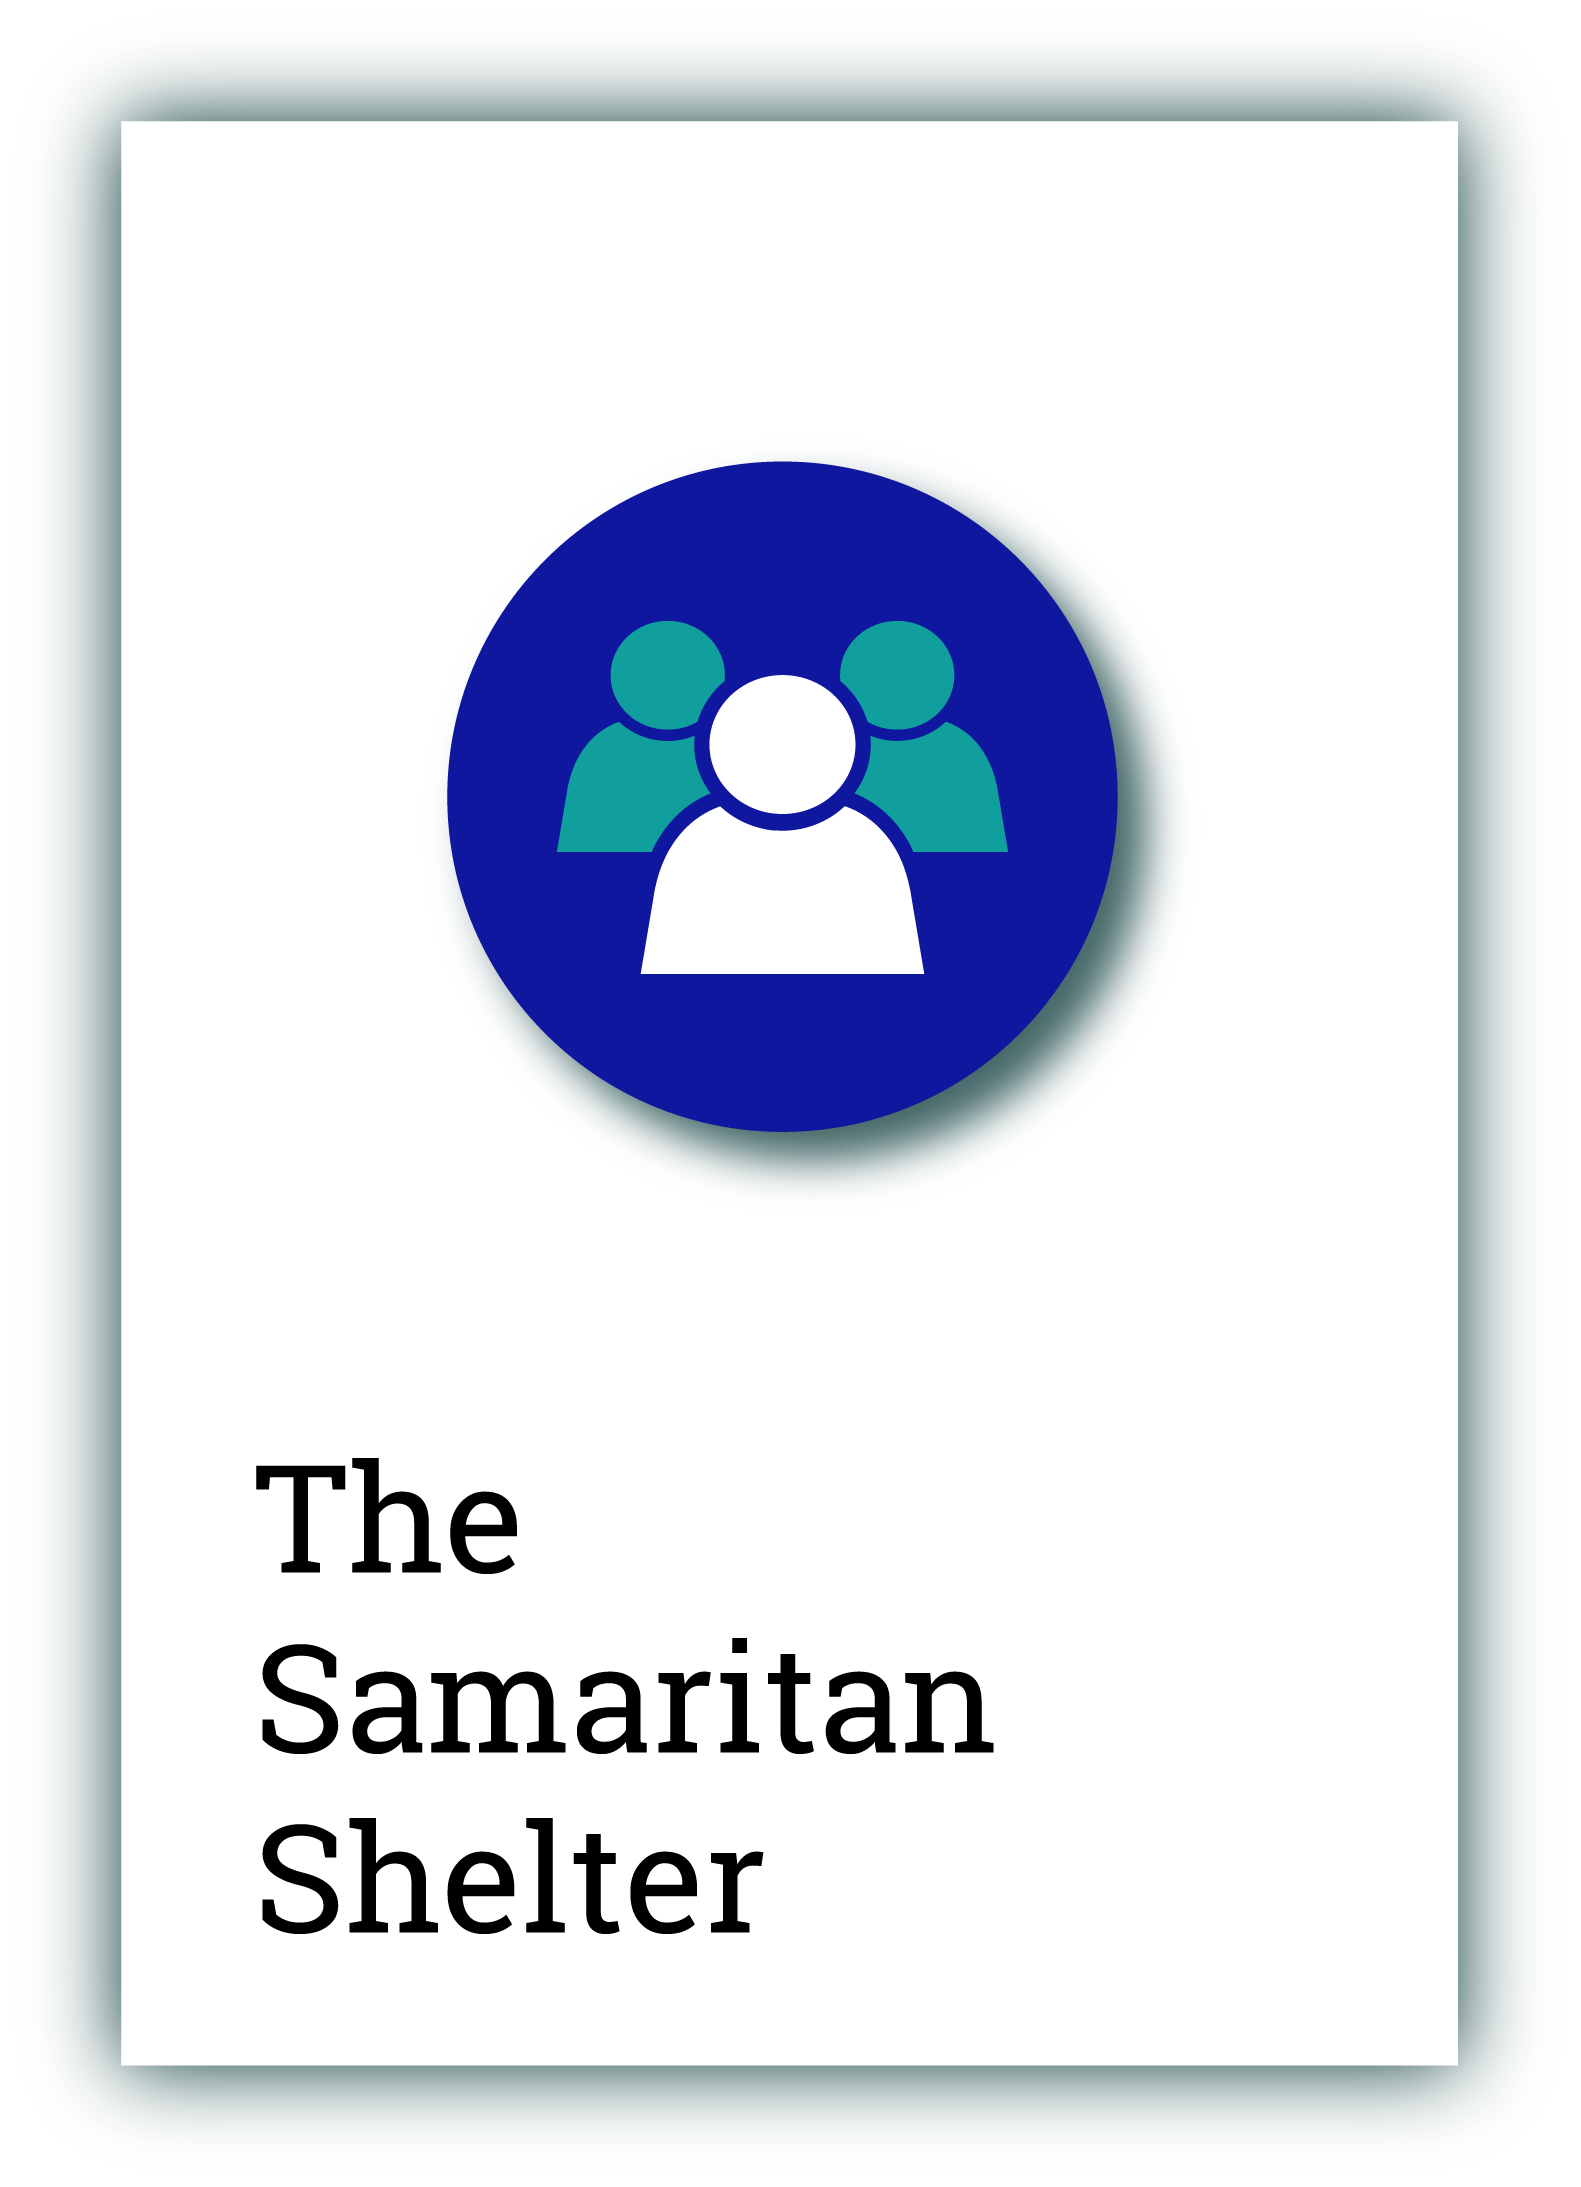 The Samaritan Shelter